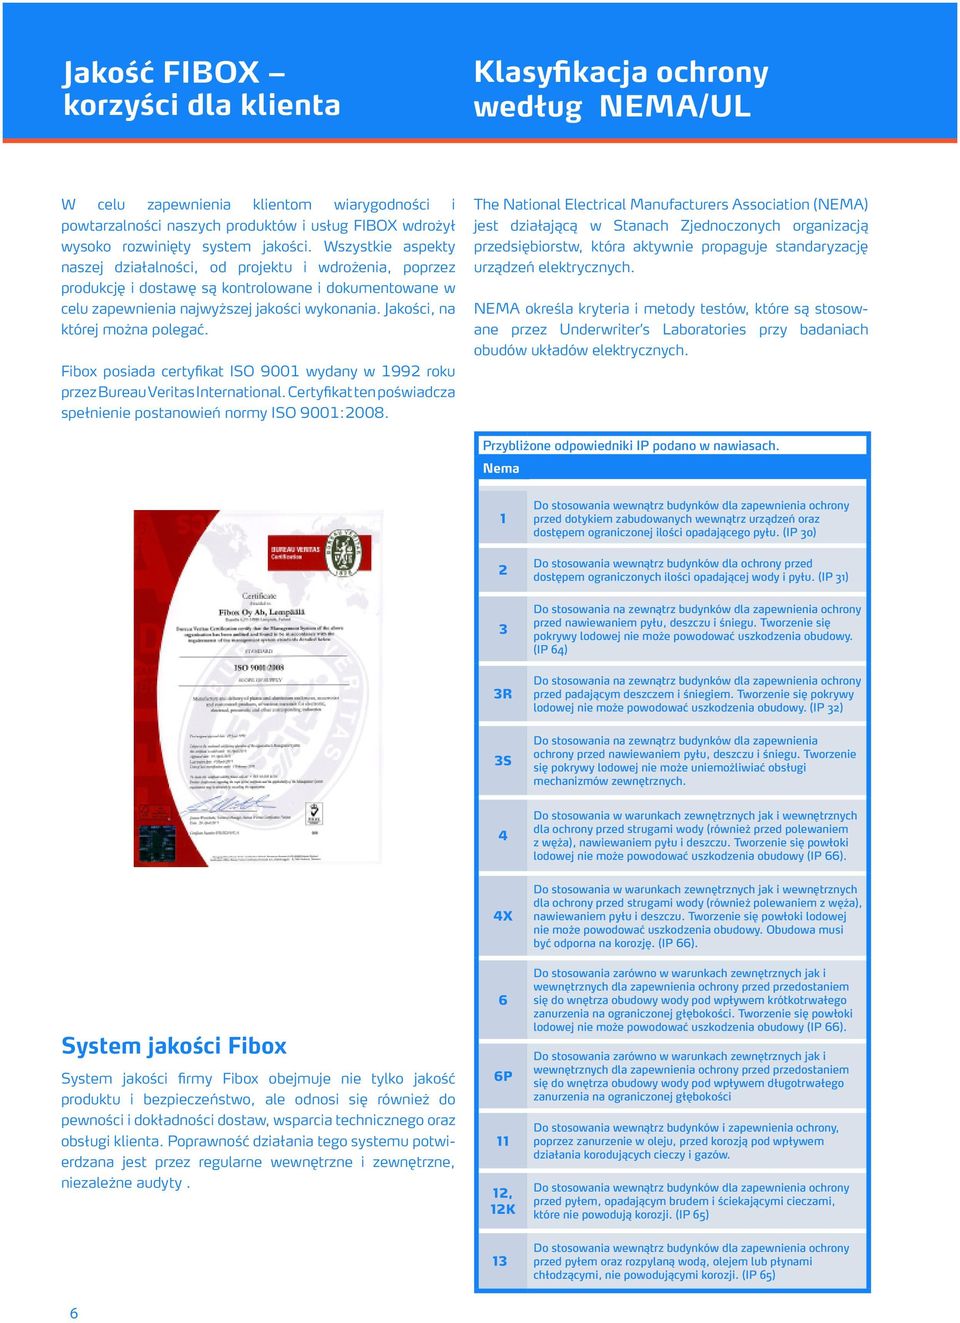 Jakości, na której można polegać. Fibox posiada certyfikat ISO 9001 wydany w 1992 roku przez Bureau Veritas International. Certyfikat ten poświadcza spełnienie postanowień normy ISO 9001:2008.